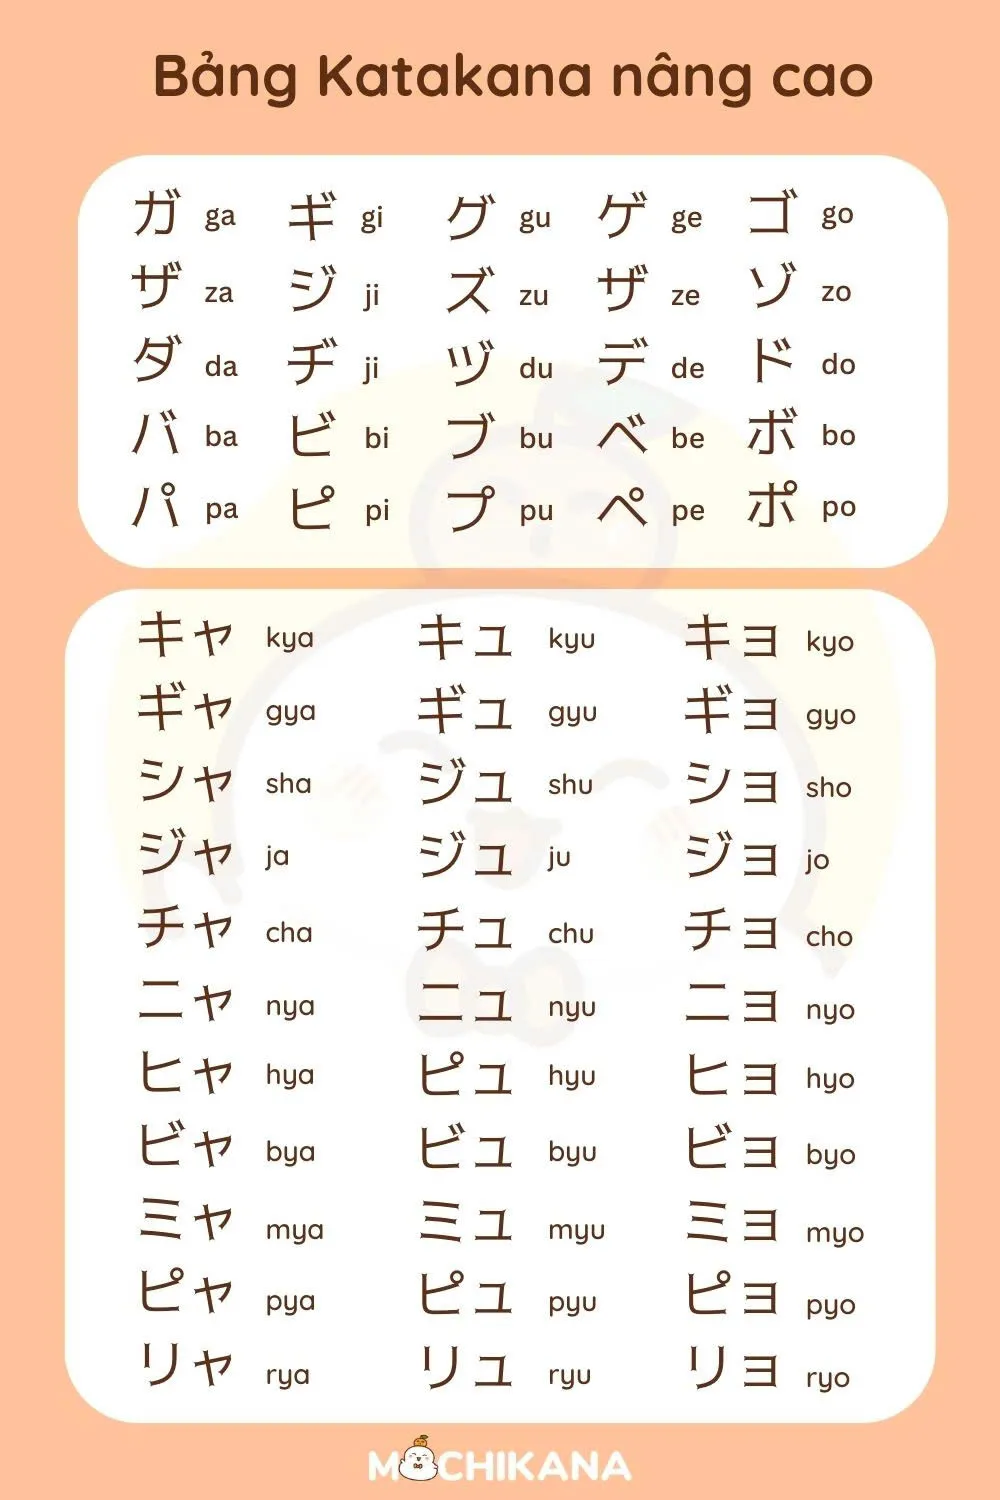 Bảng chữ cái Katakana nâng cao